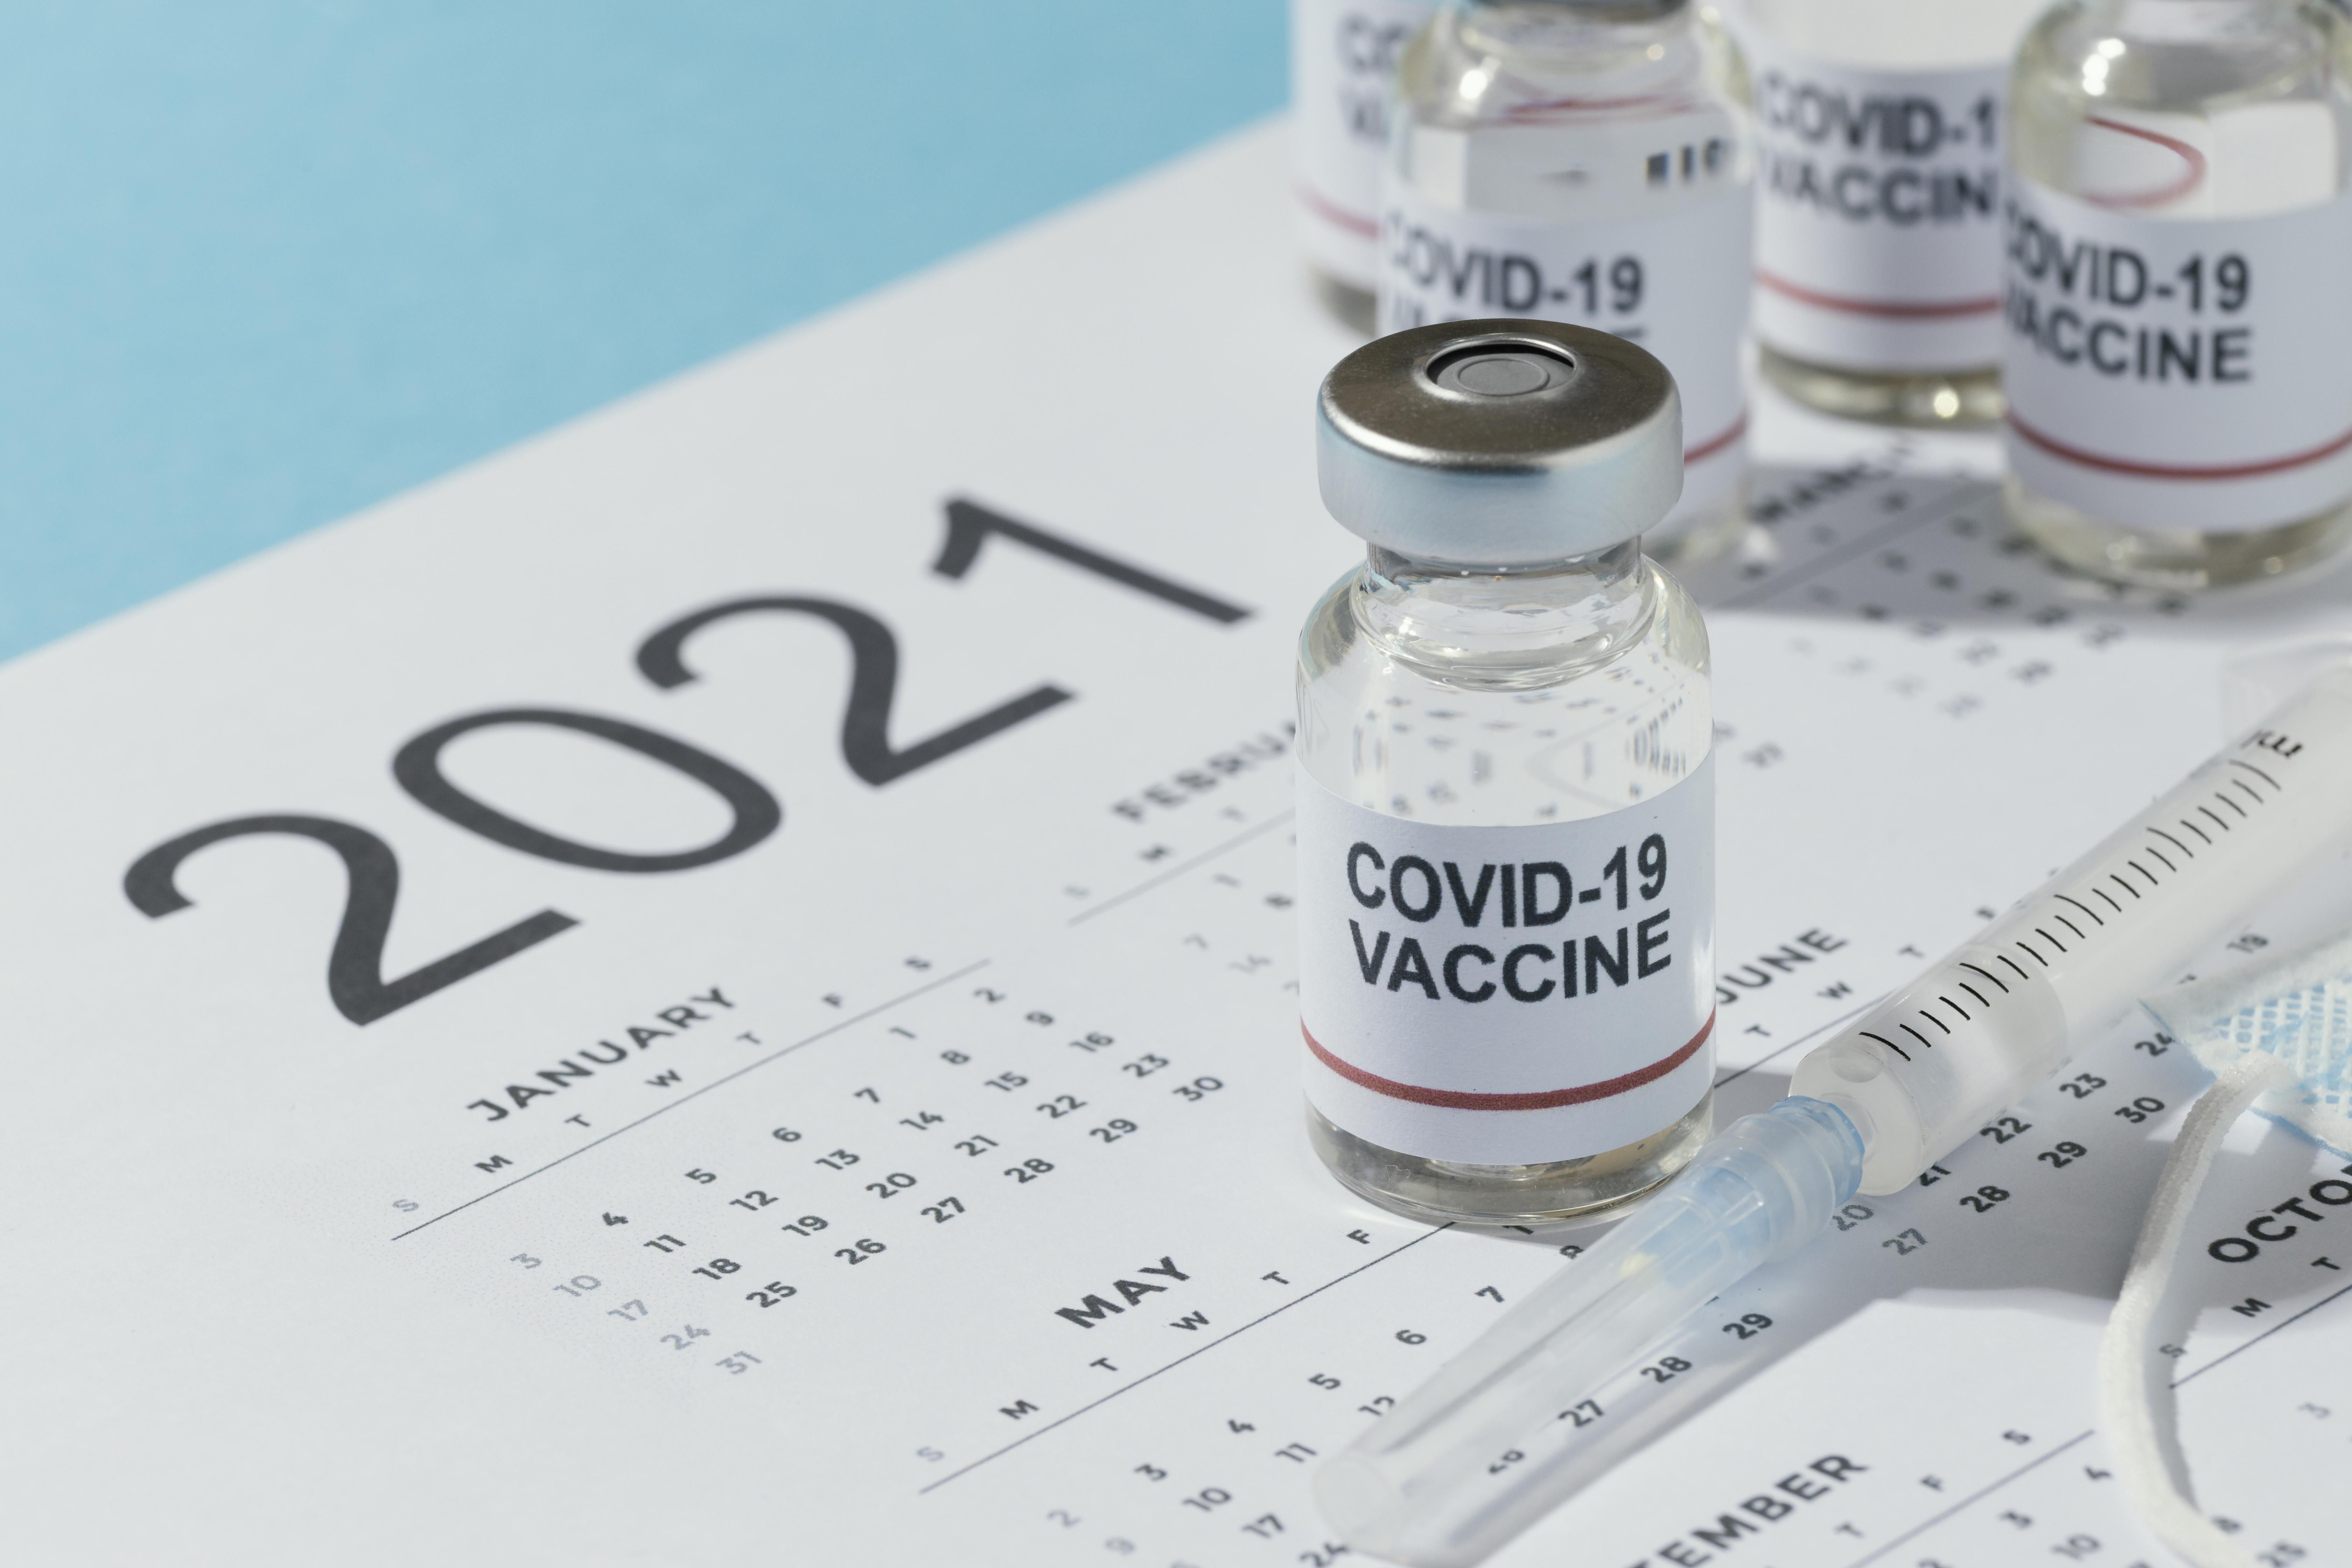 Raportin mukaan kaksi rokotetta antaa tehokkaan suojan koronaviruksen kaikkia todettuja variantteja vastaan. Kuva: freepik.com